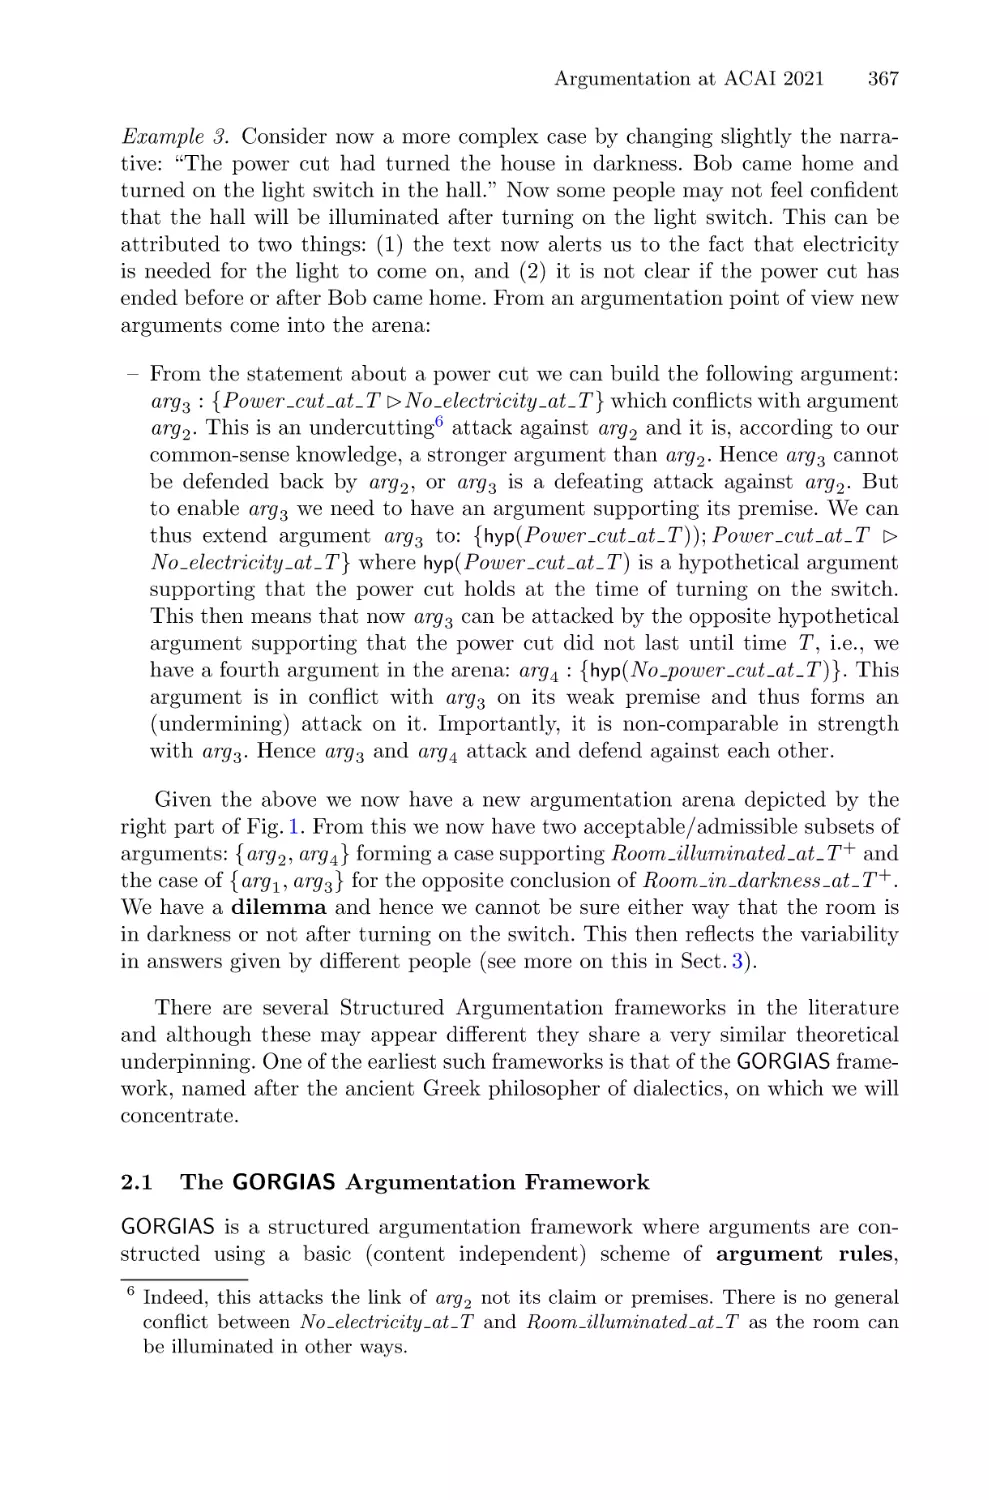 2.1 The GORGIAS Argumentation Framework